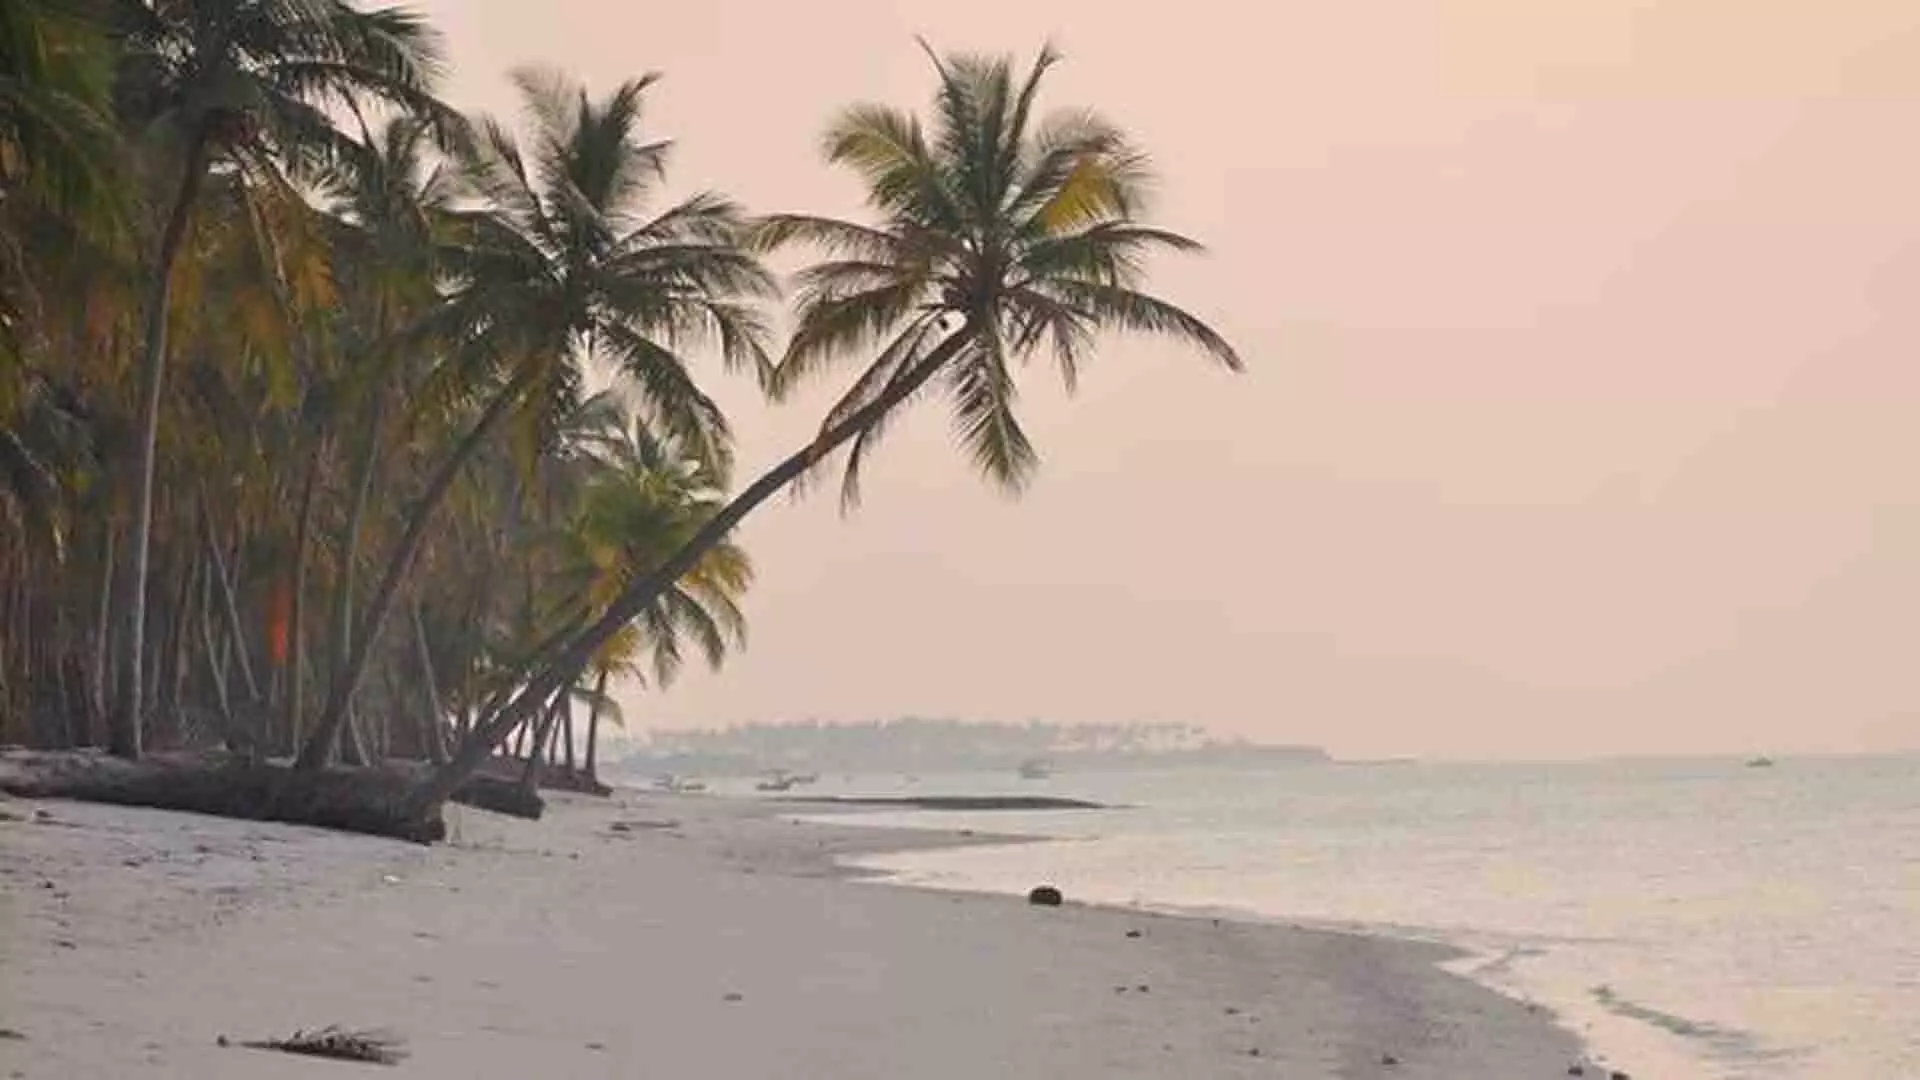 पीएम मोदी की द्वीप यात्रा के बाद लक्षद्वीप का पर्यटन बढ़ा, अधिकारी